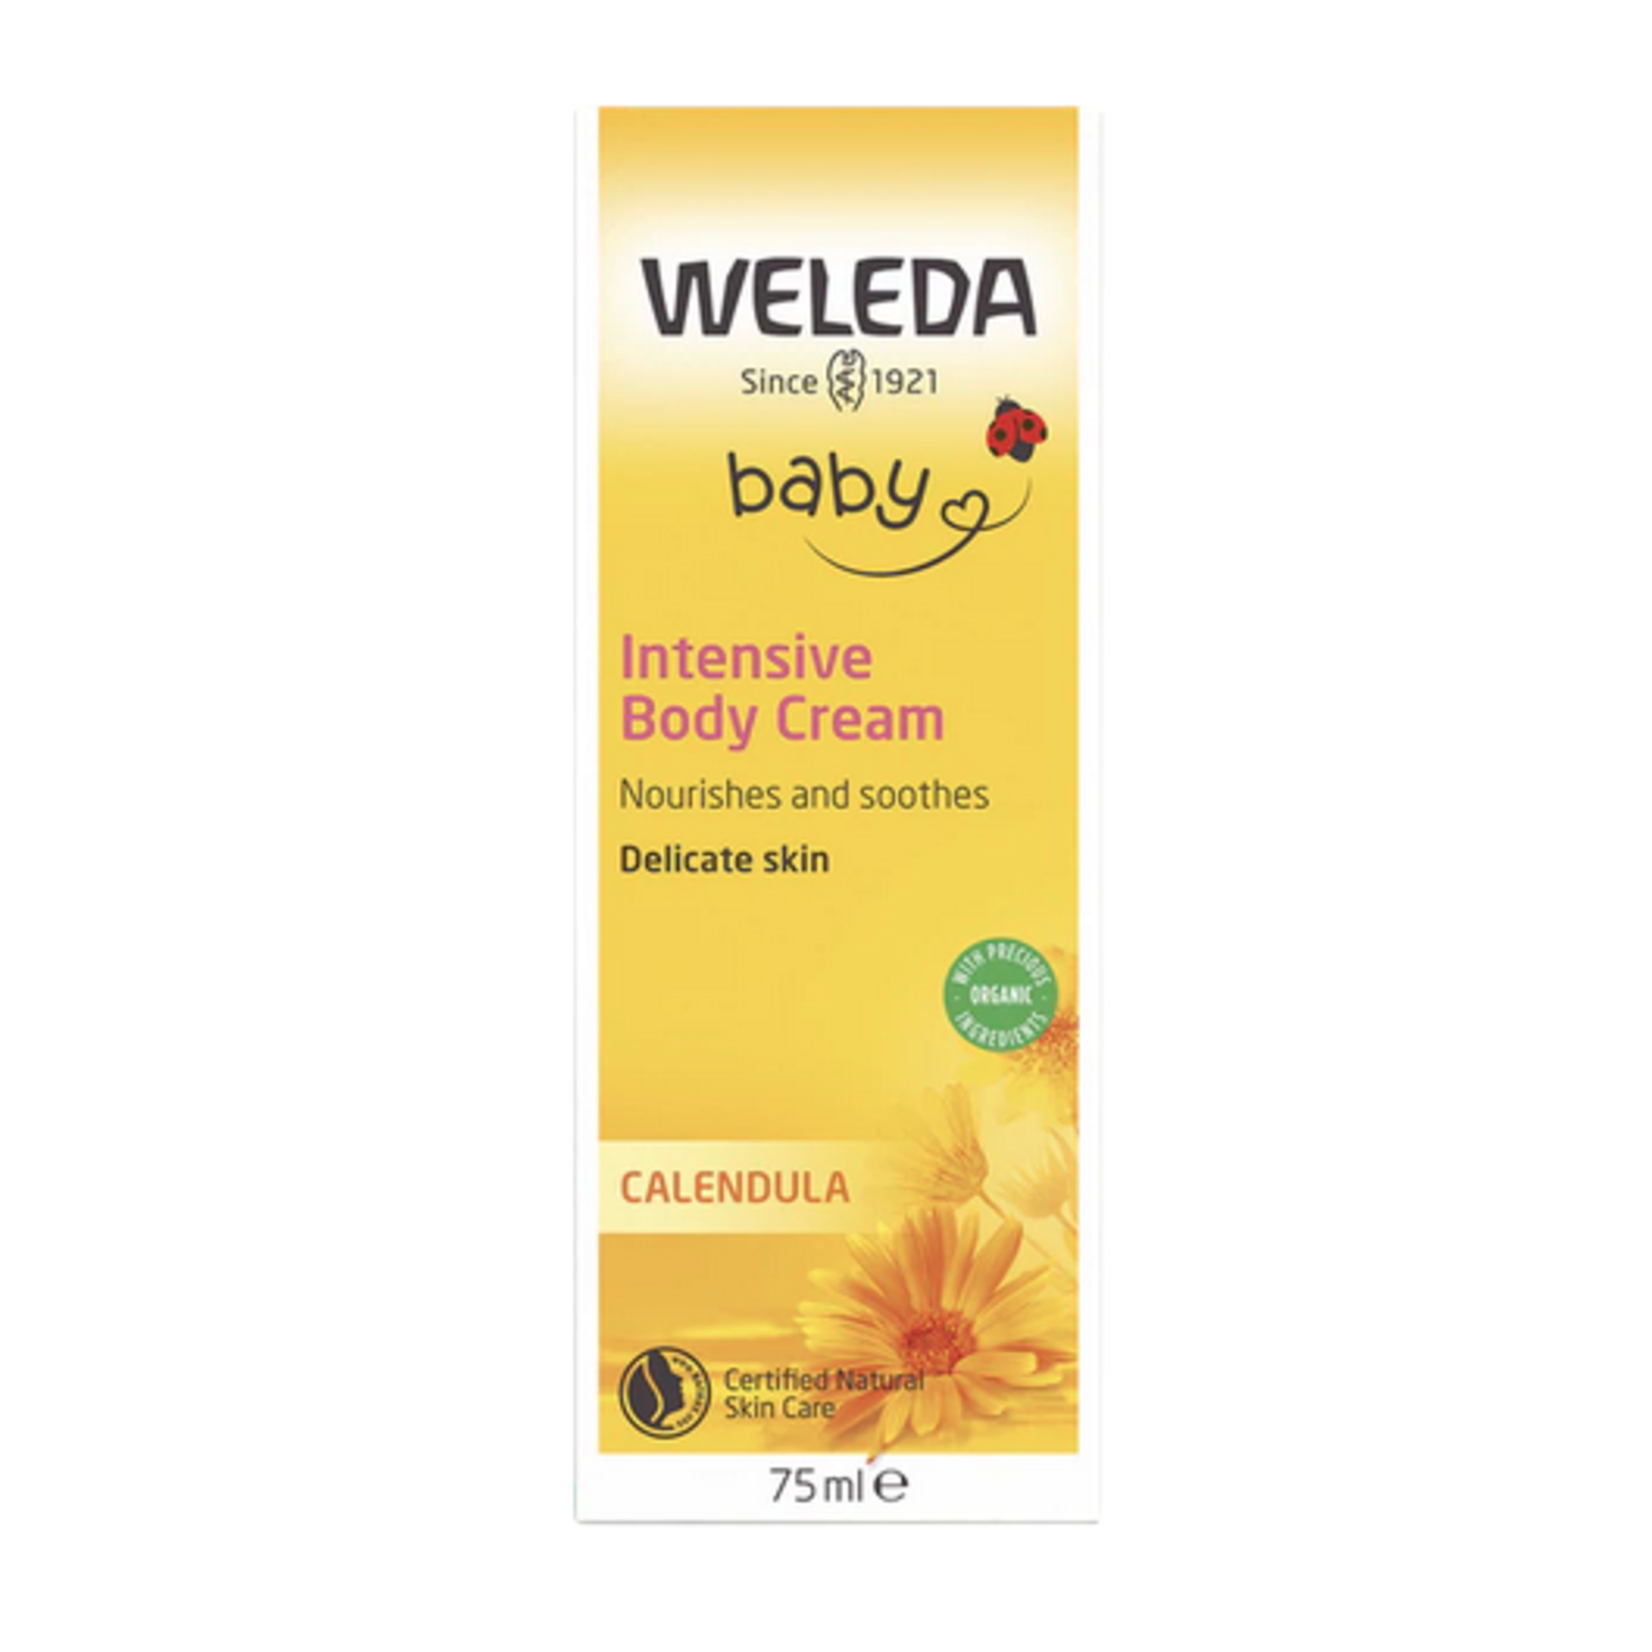 WELEDA weleda calendula intensive Body Cream Baby 75ml